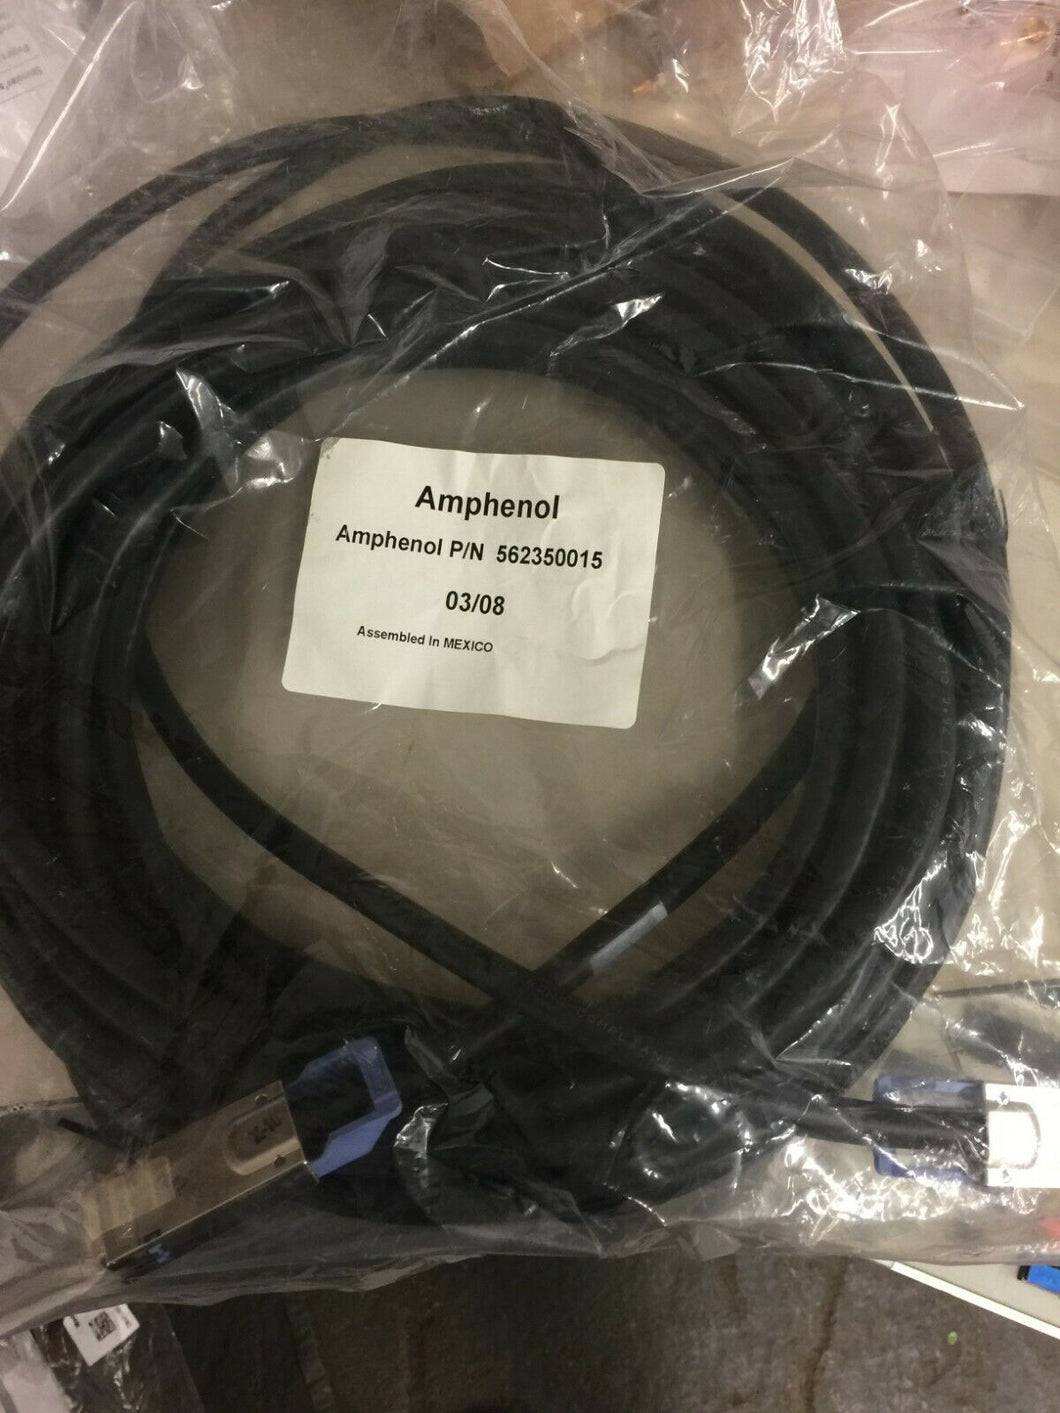 Amphenol 10-Gigabit Ethernet CX4 Cable 15mtr part no;562350015